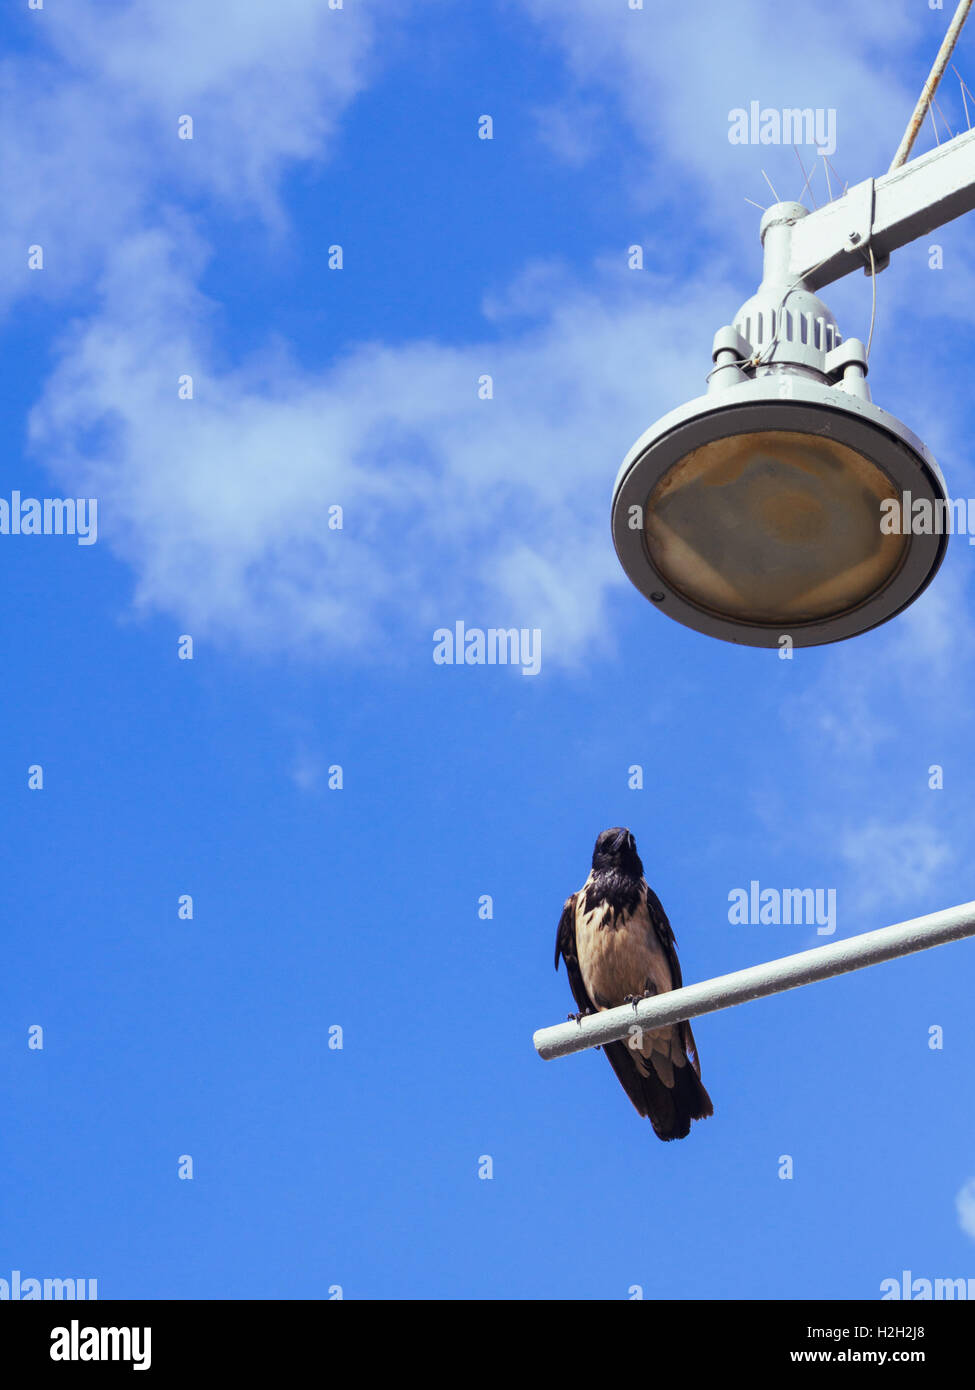 Hooded Crow (Corvus cornix) perché sur un lampadaire avec fond de ciel bleu. Photographié en Israël en mai Banque D'Images